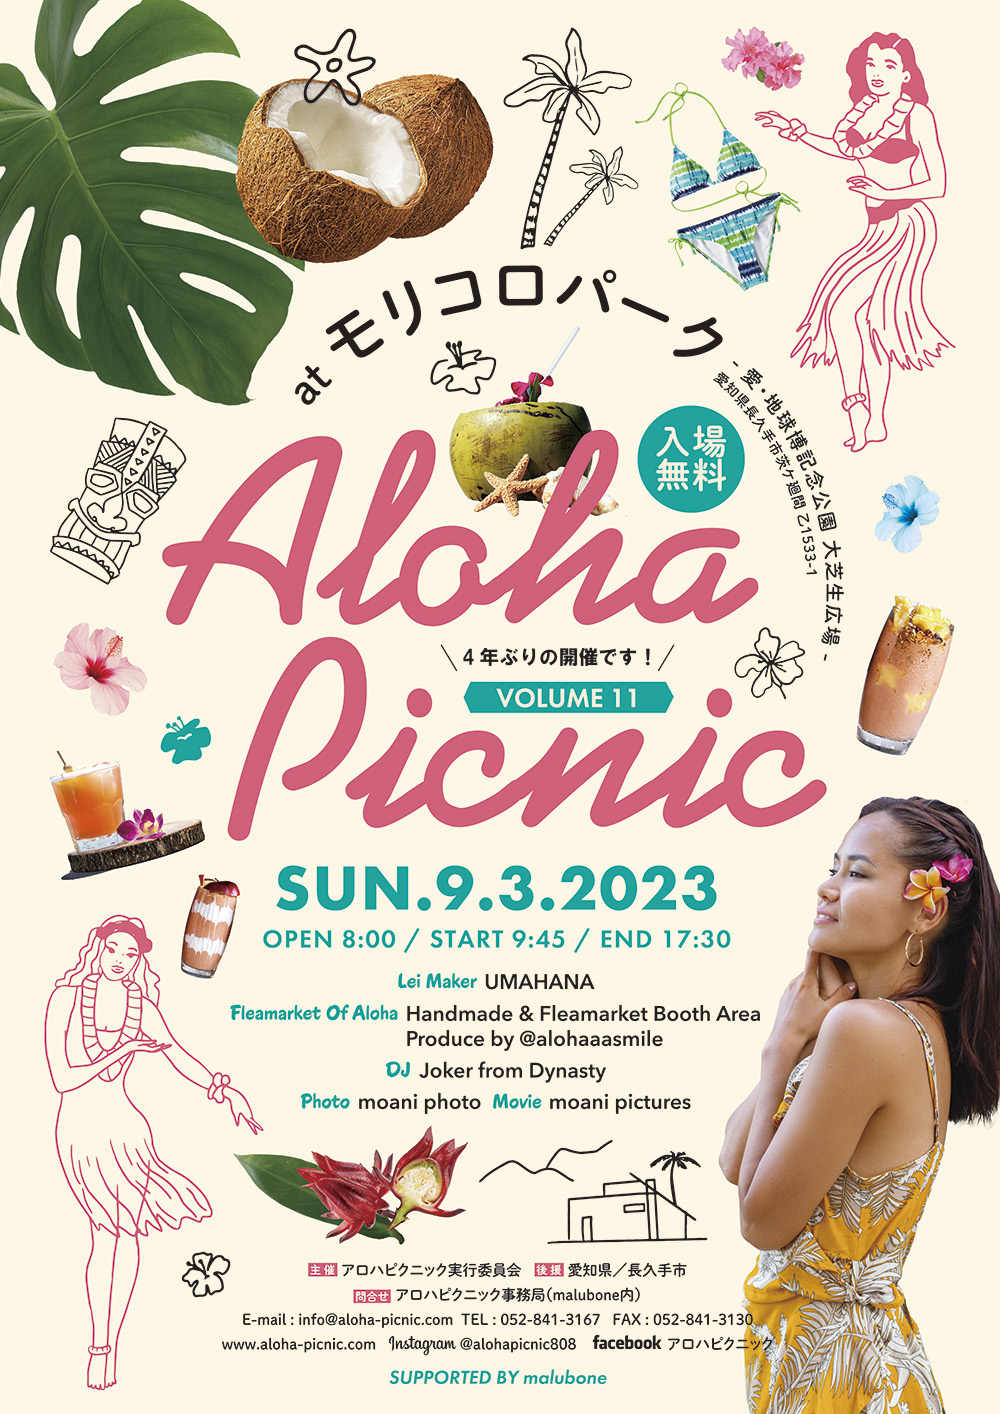 Home - Aloha Picnic